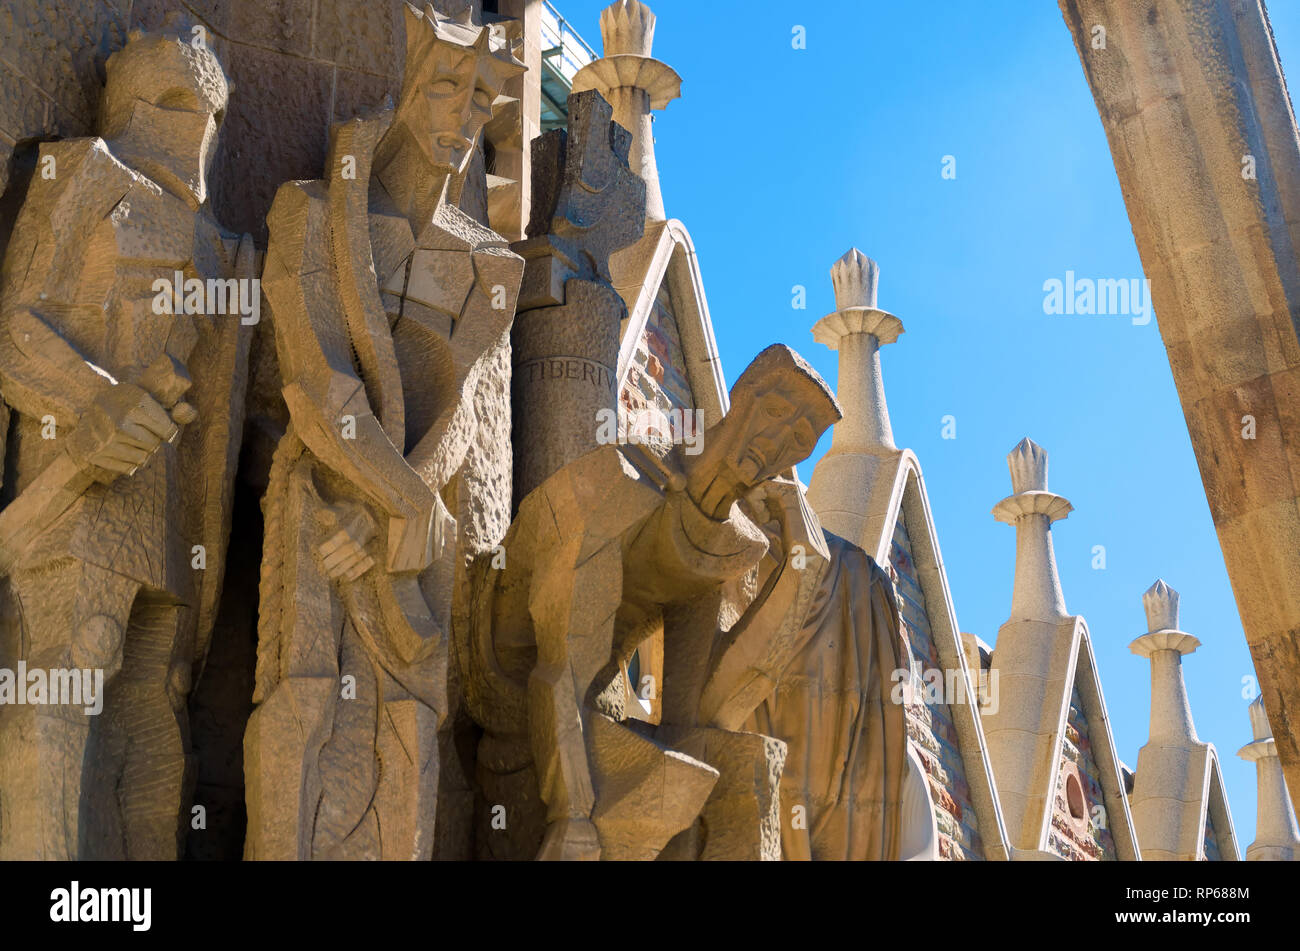 Schöne Skulpturen schmücken die Fassade der Kirche Sagrada Familia in Barcelona, Spanien. Stockfoto